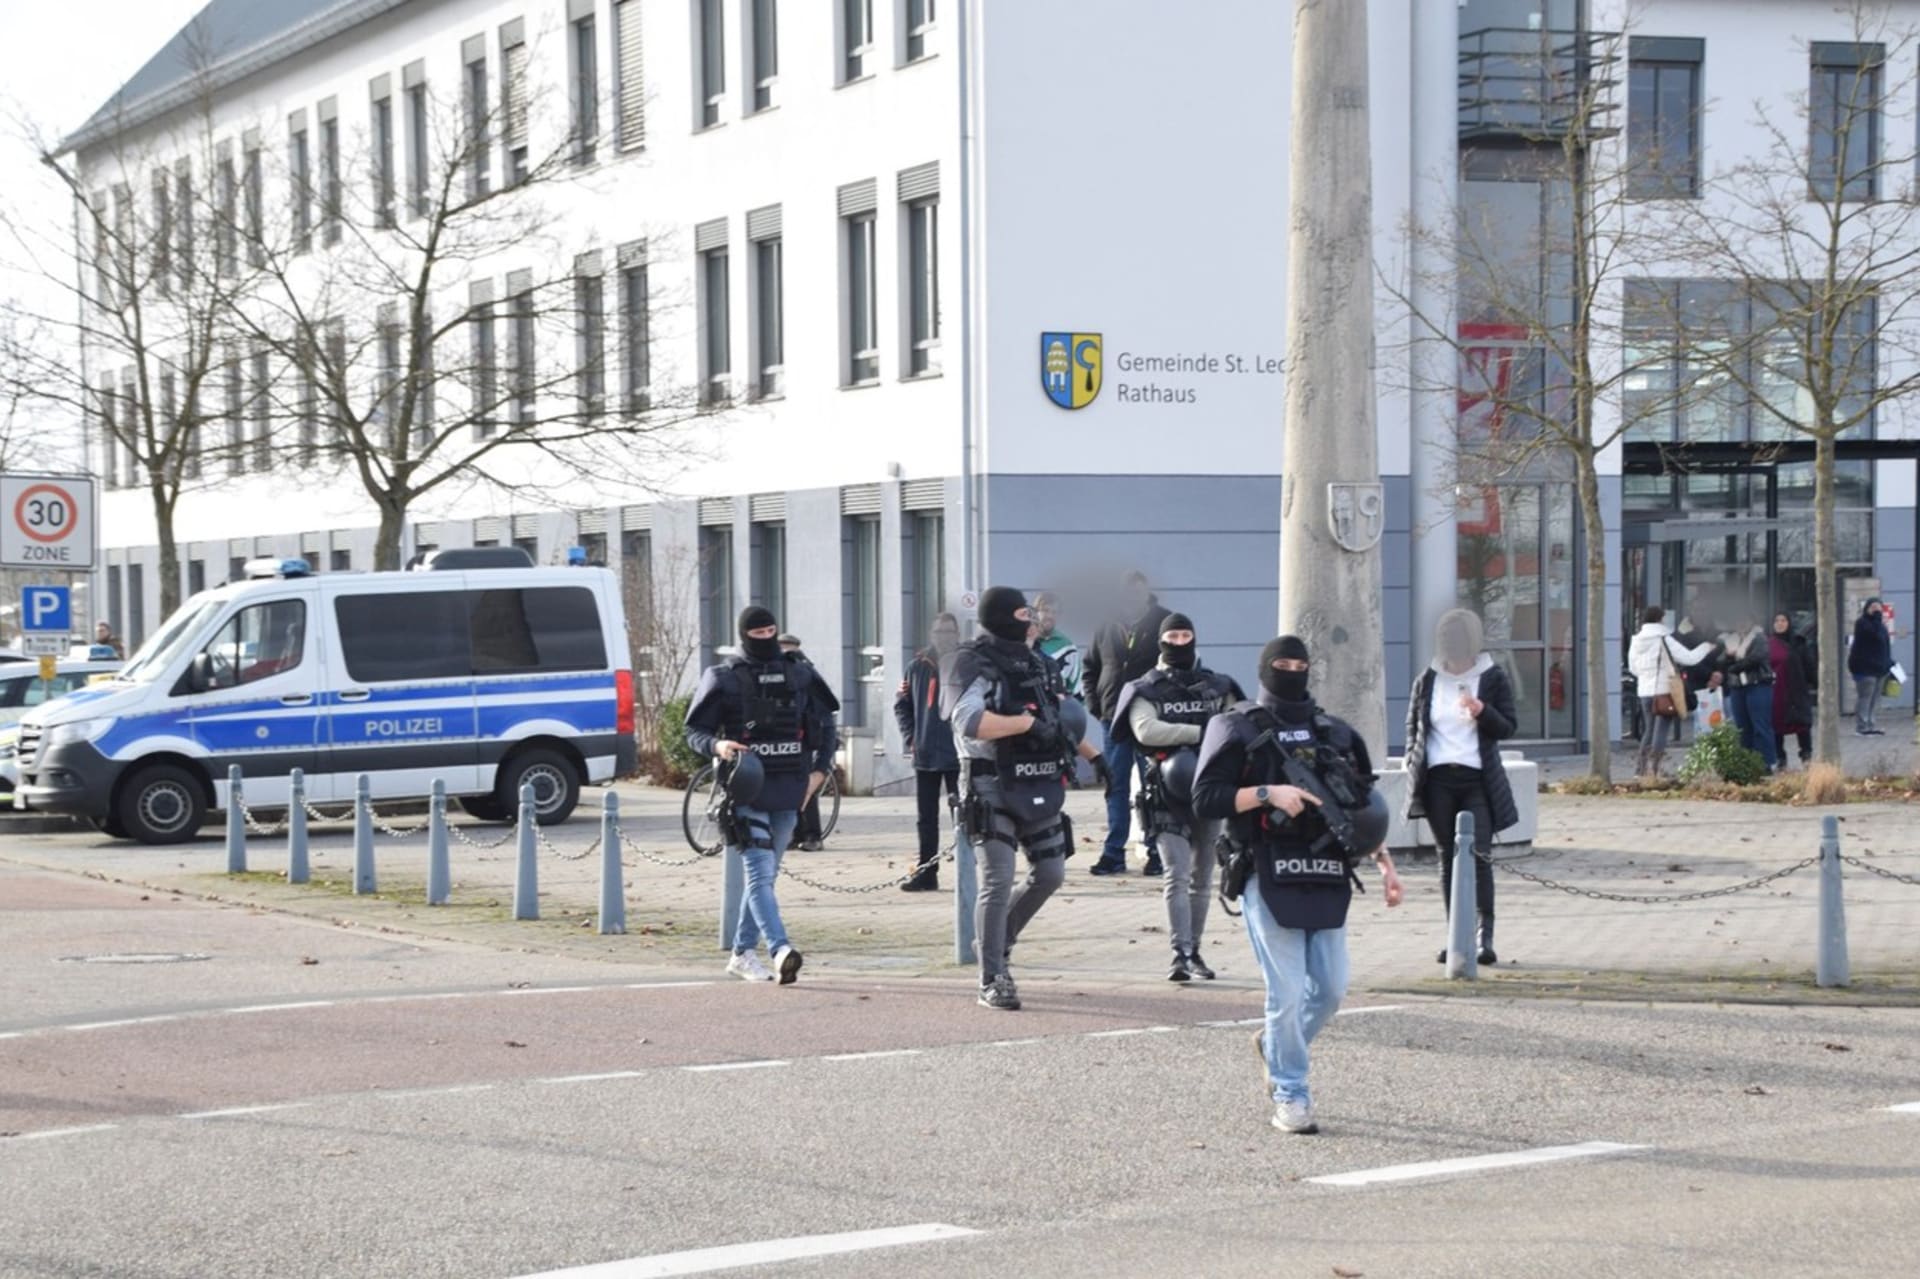 Policisté zasahovali na gymnáziu v německé obci St. Leon-Rot.